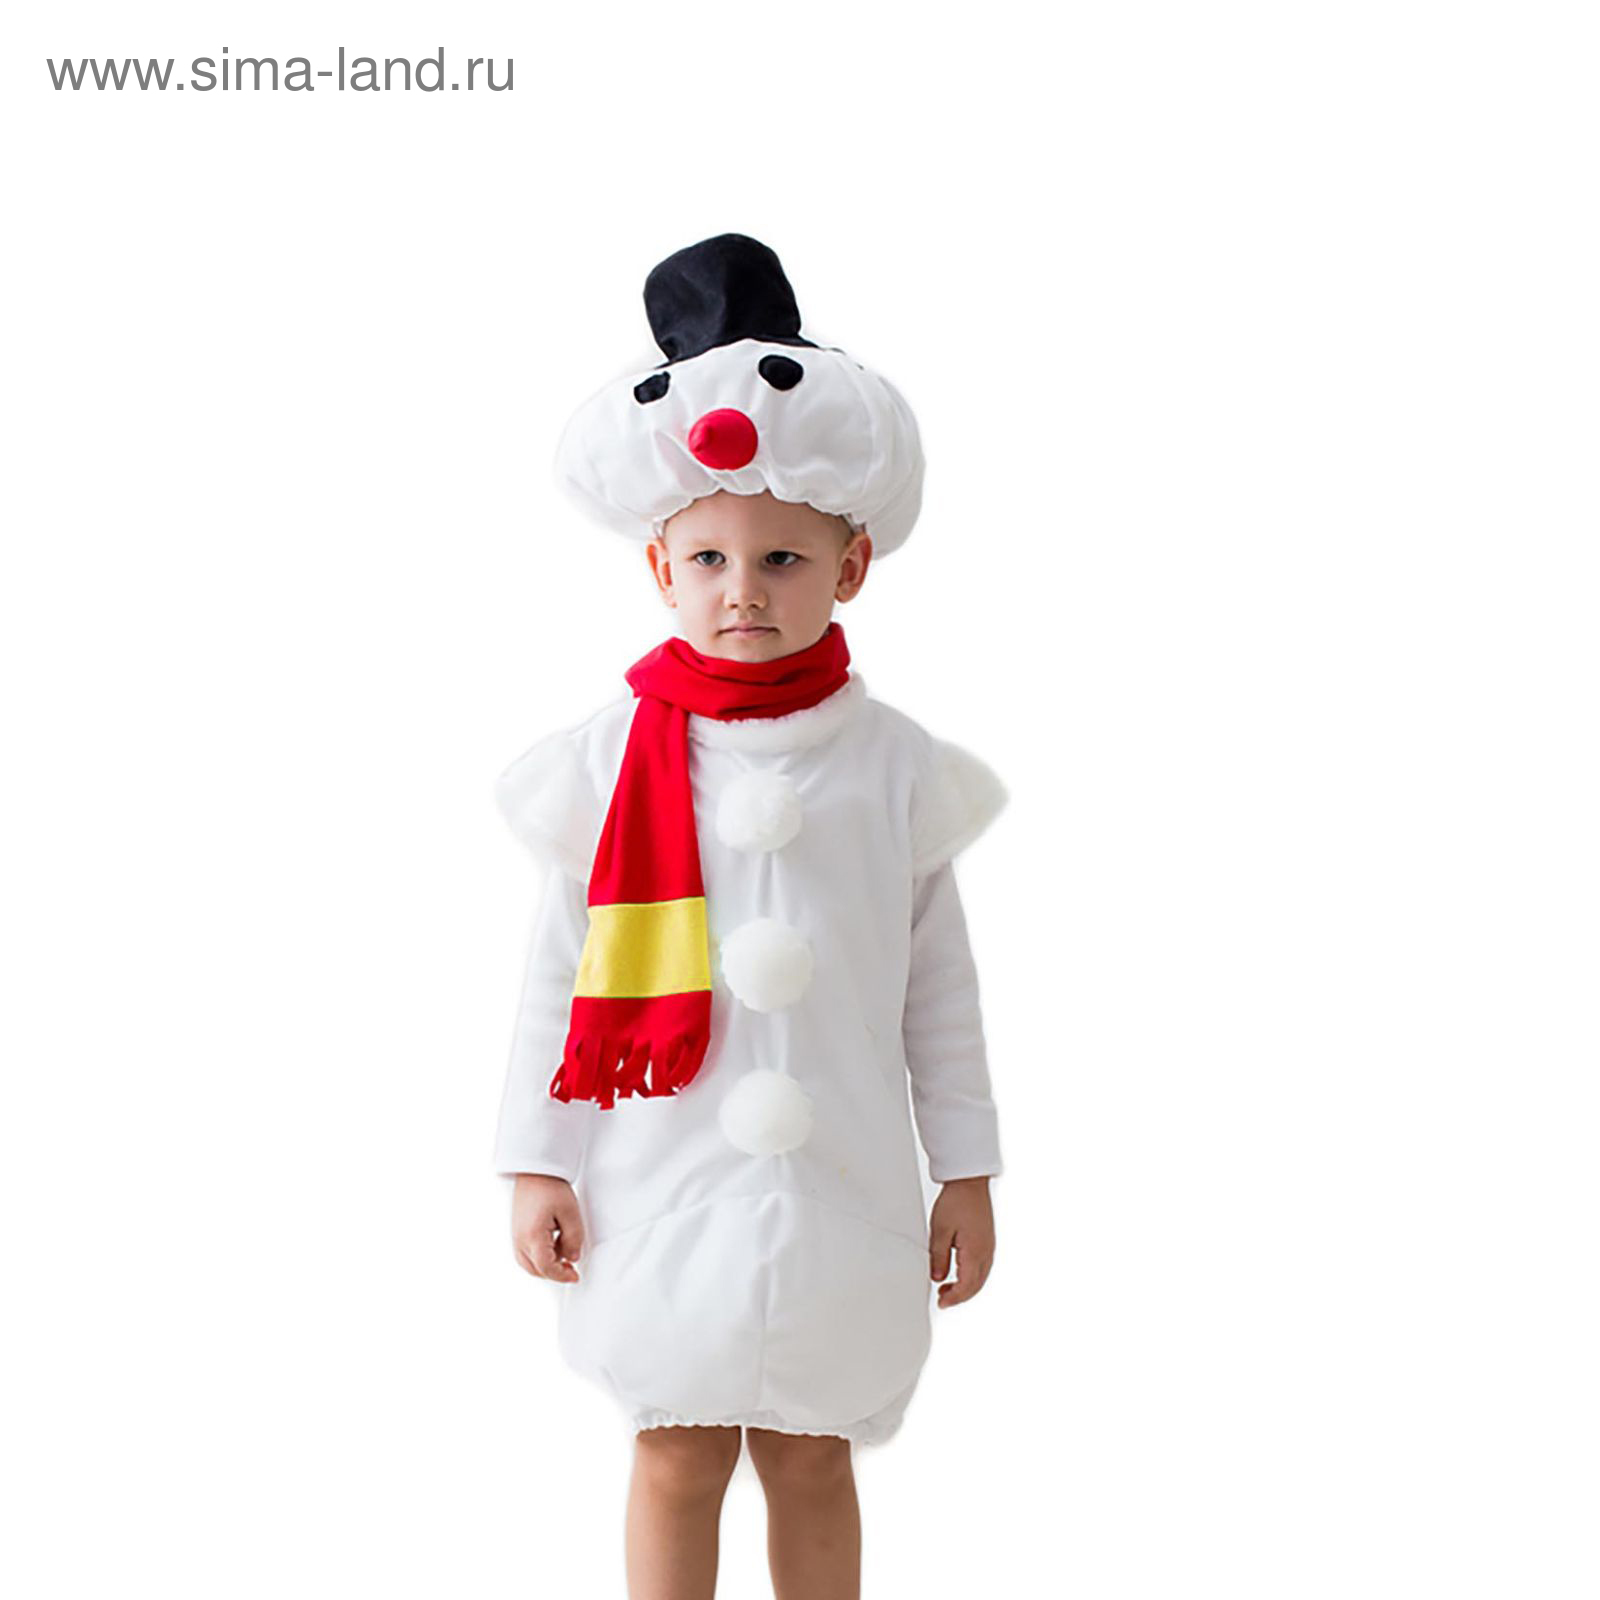 Карнавальные костюмы СНЕГОВИКИ для мальчика 6 - 8 лет - купить в интернет-магазине l2luna.ru